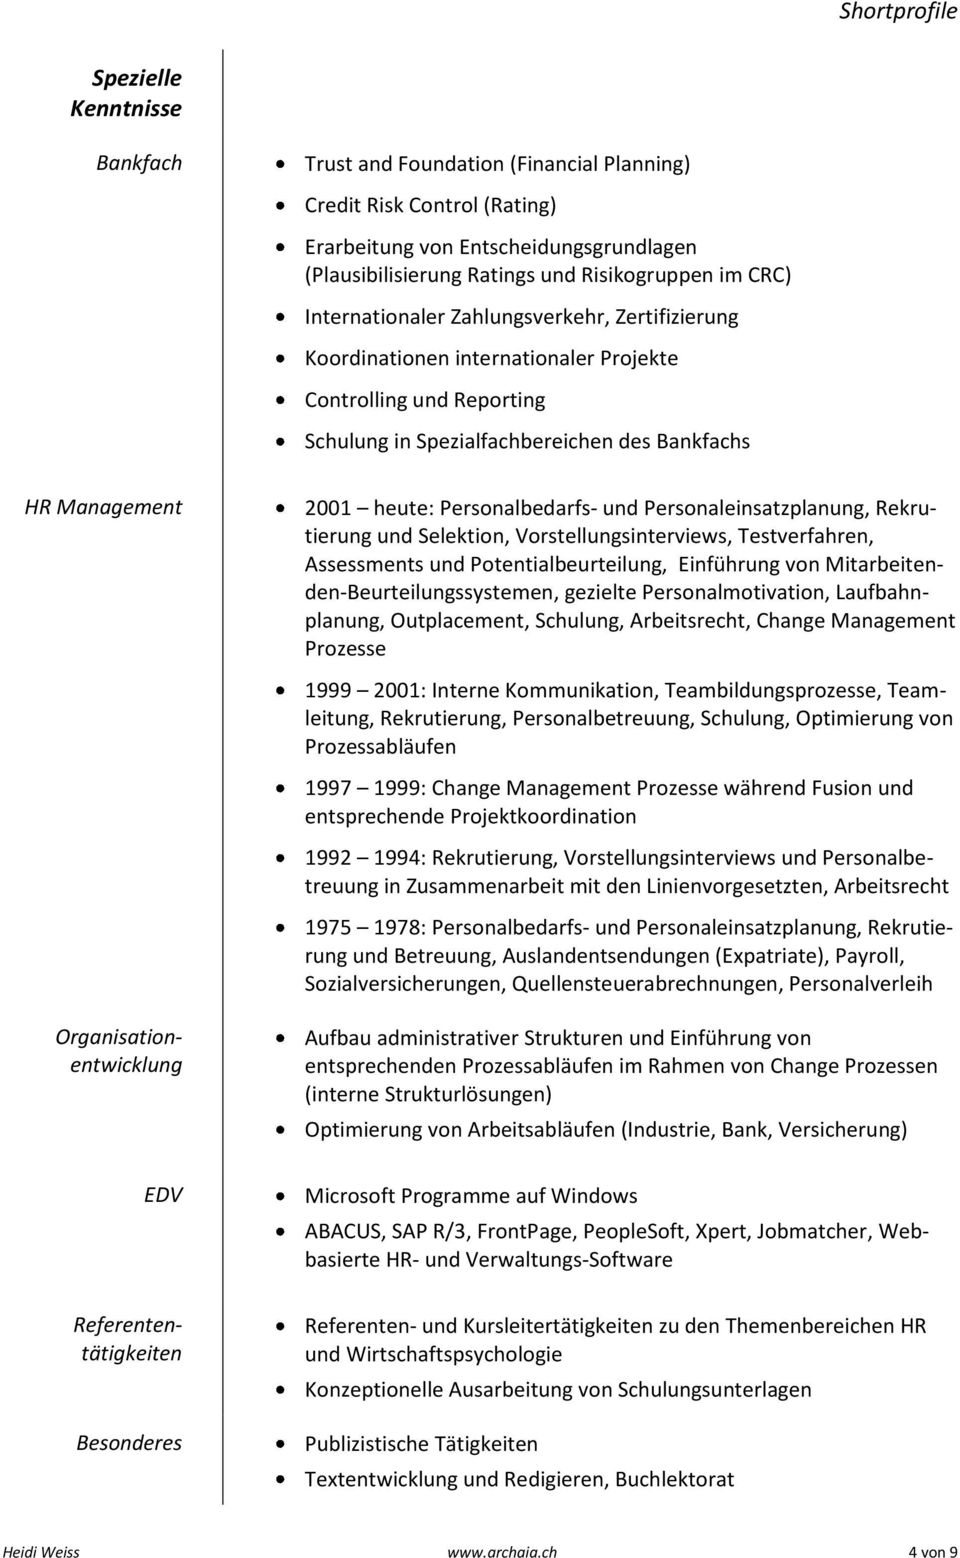 2001 heute: Personalbedarfs- und Personaleinsatzplanung, Rekrutierung und Selektion, Vorstellungsinterviews, Testverfahren, Assessments und Potentialbeurteilung, Einführung von